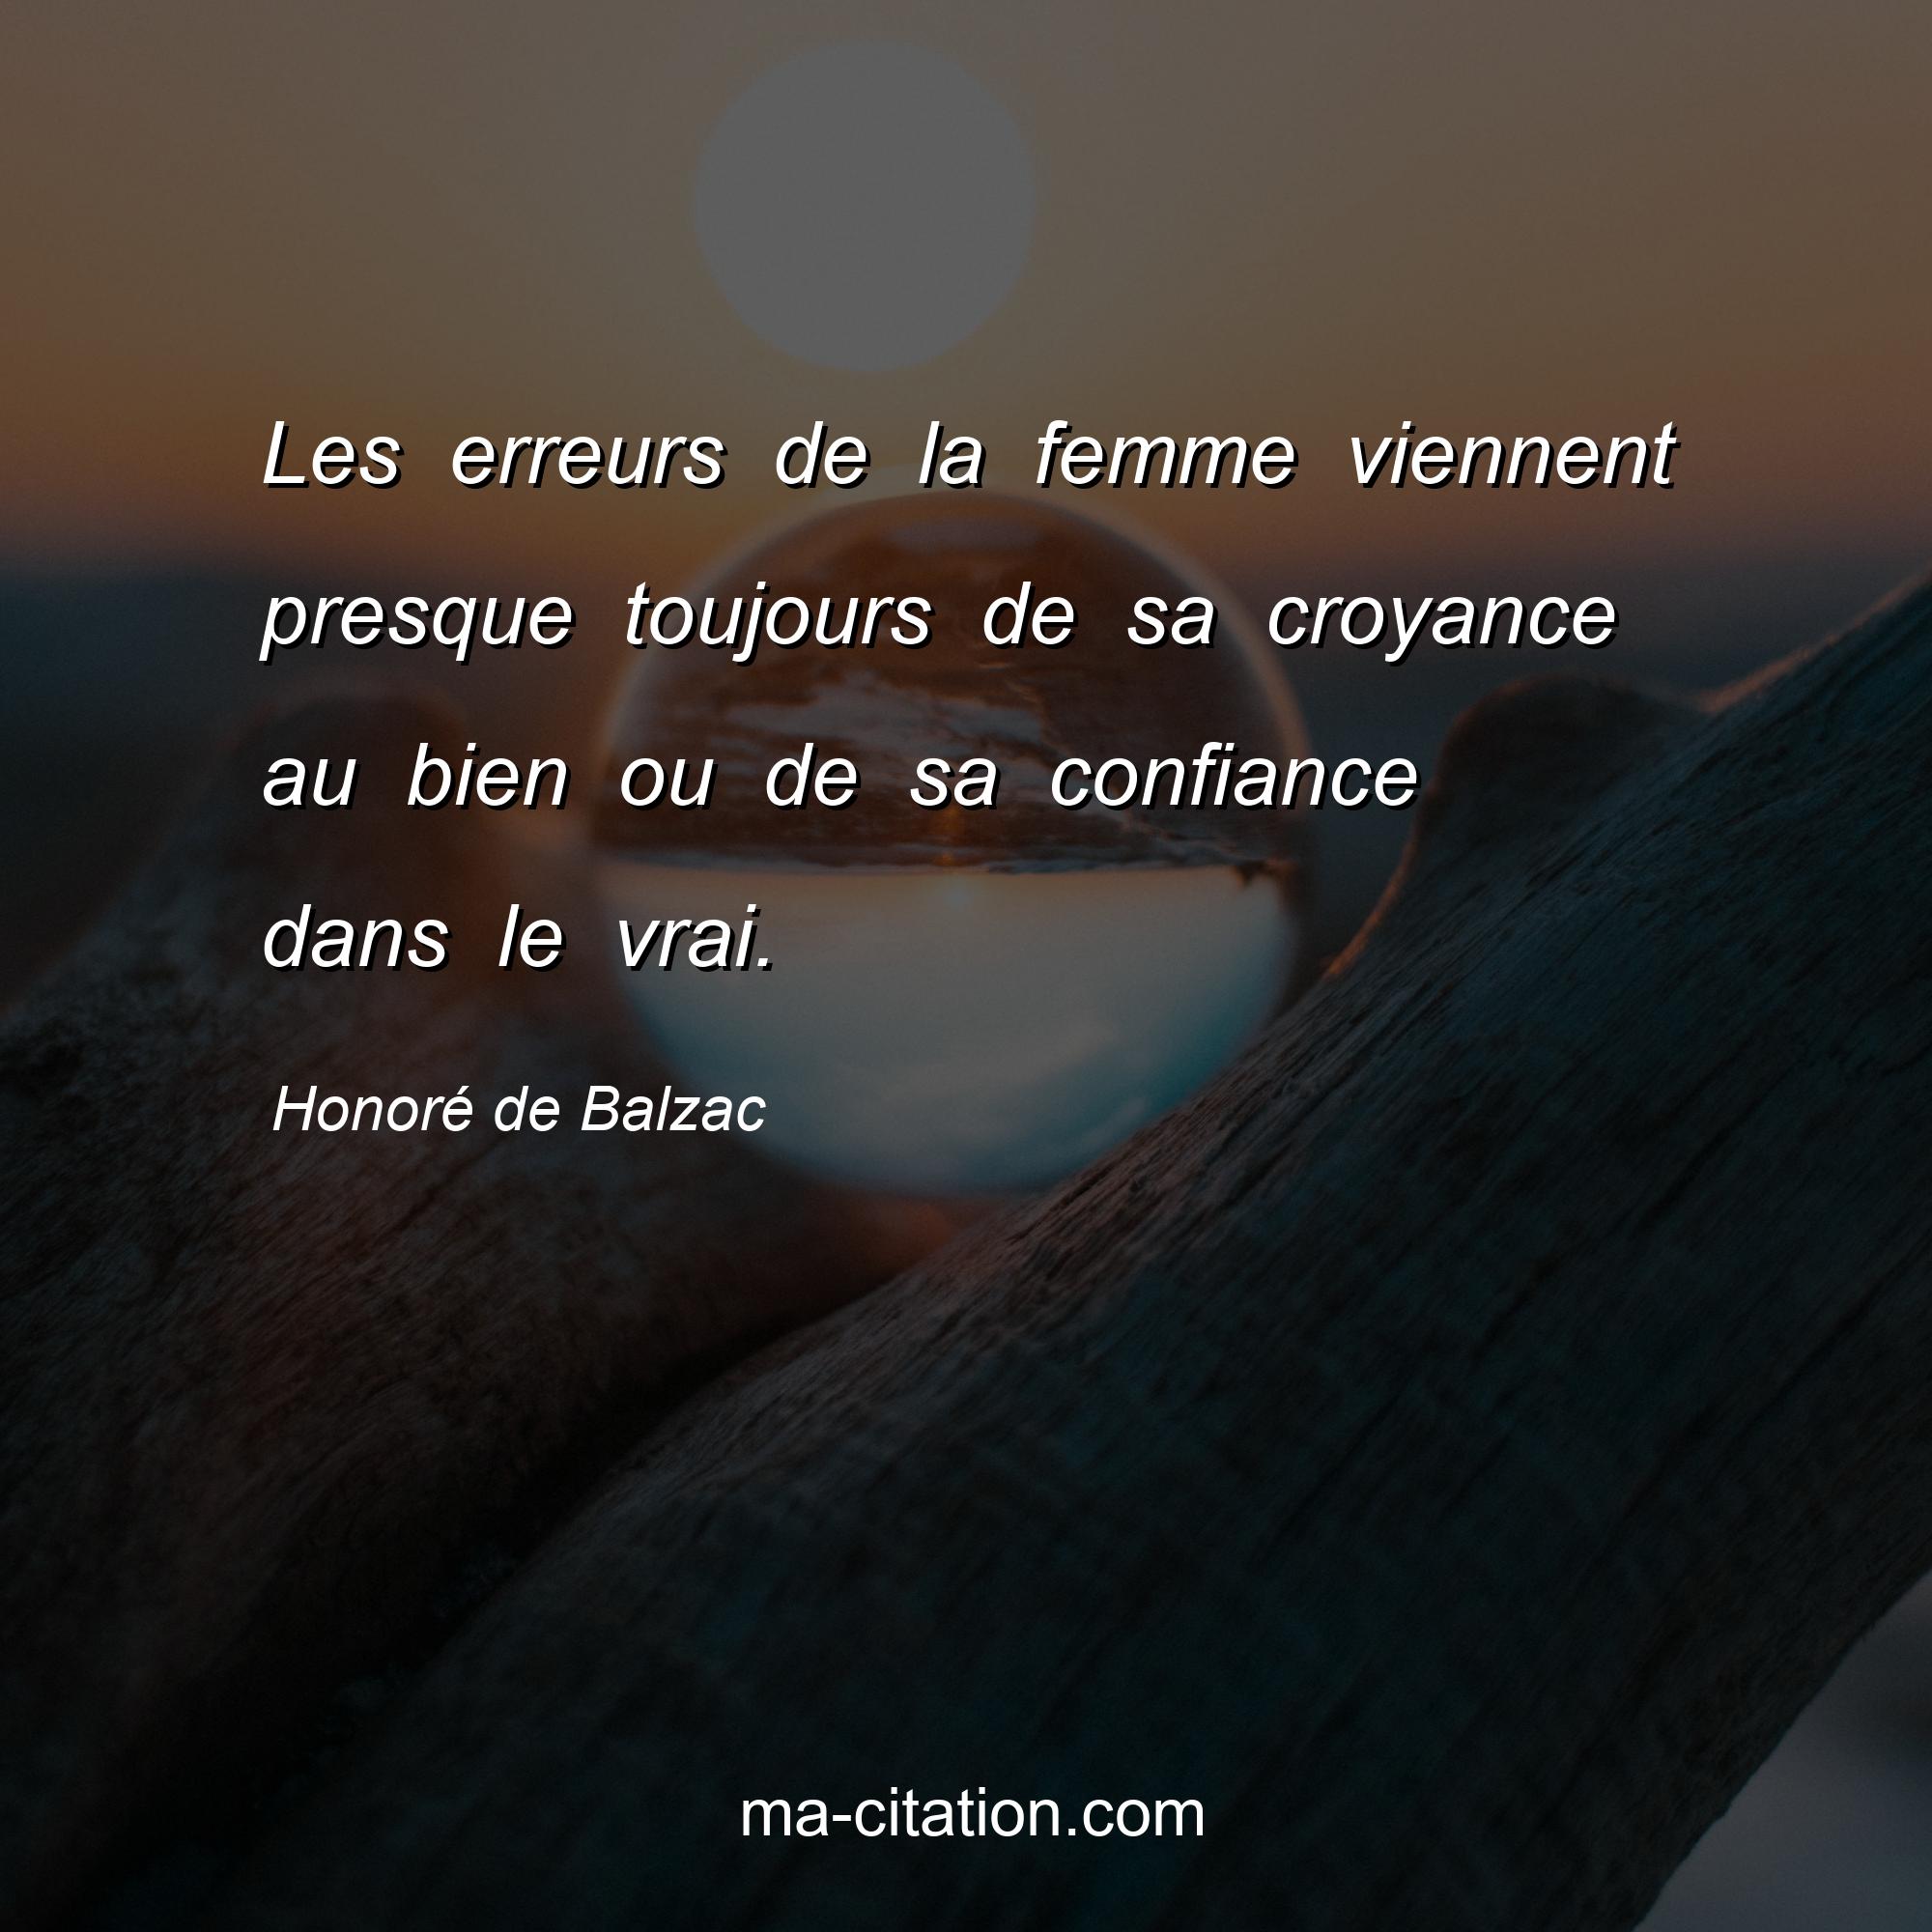 Honoré de Balzac : Les erreurs de la femme viennent presque toujours de sa croyance au bien ou de sa confiance dans le vrai.